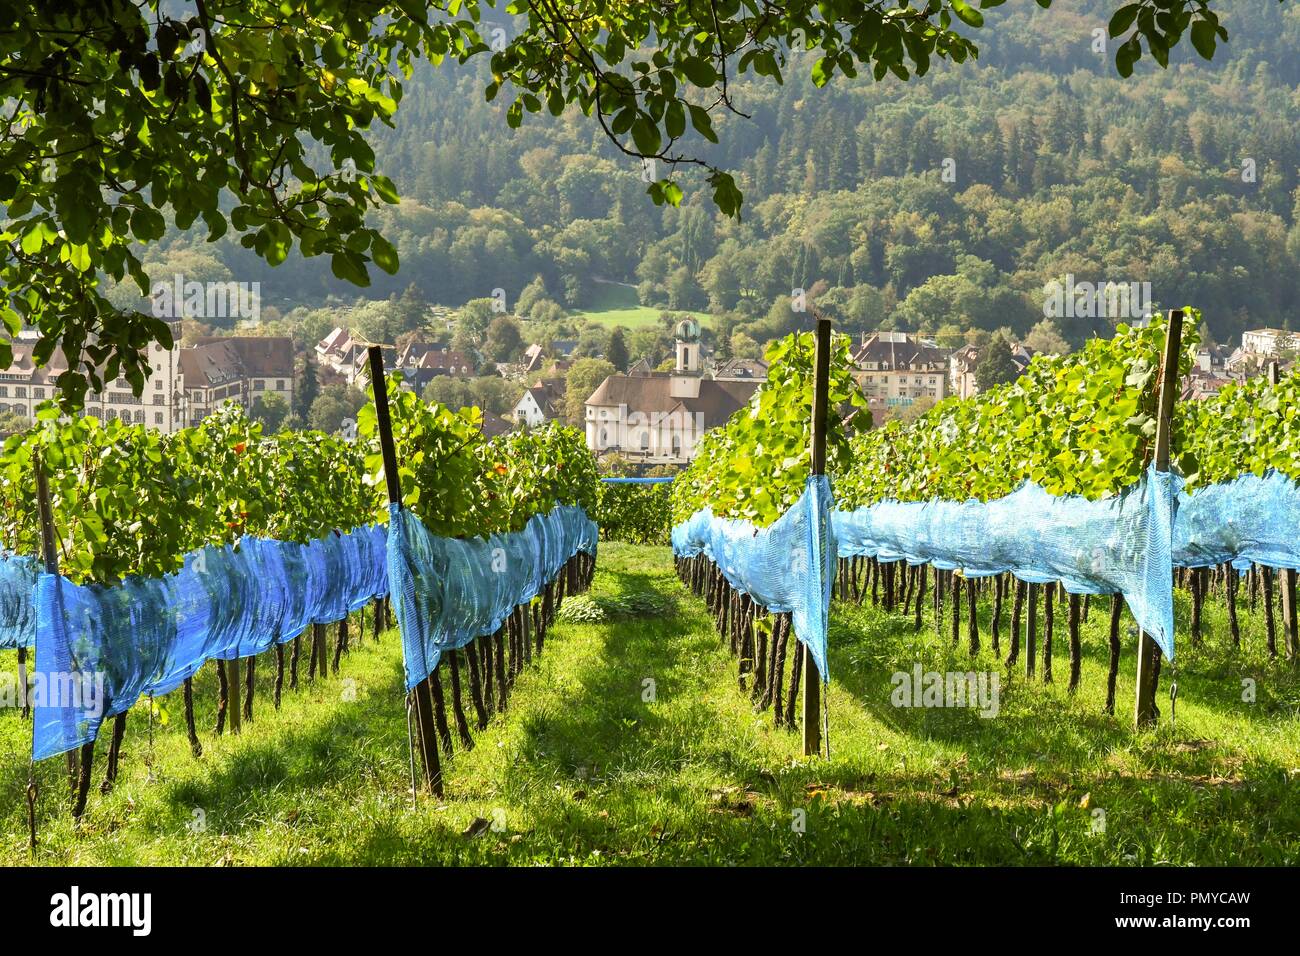 Freiburg vigneti Vigneti ricoperti di netting sulle colline che circondano la città di Freiburg im Breisgau, Germania, Foto Stock